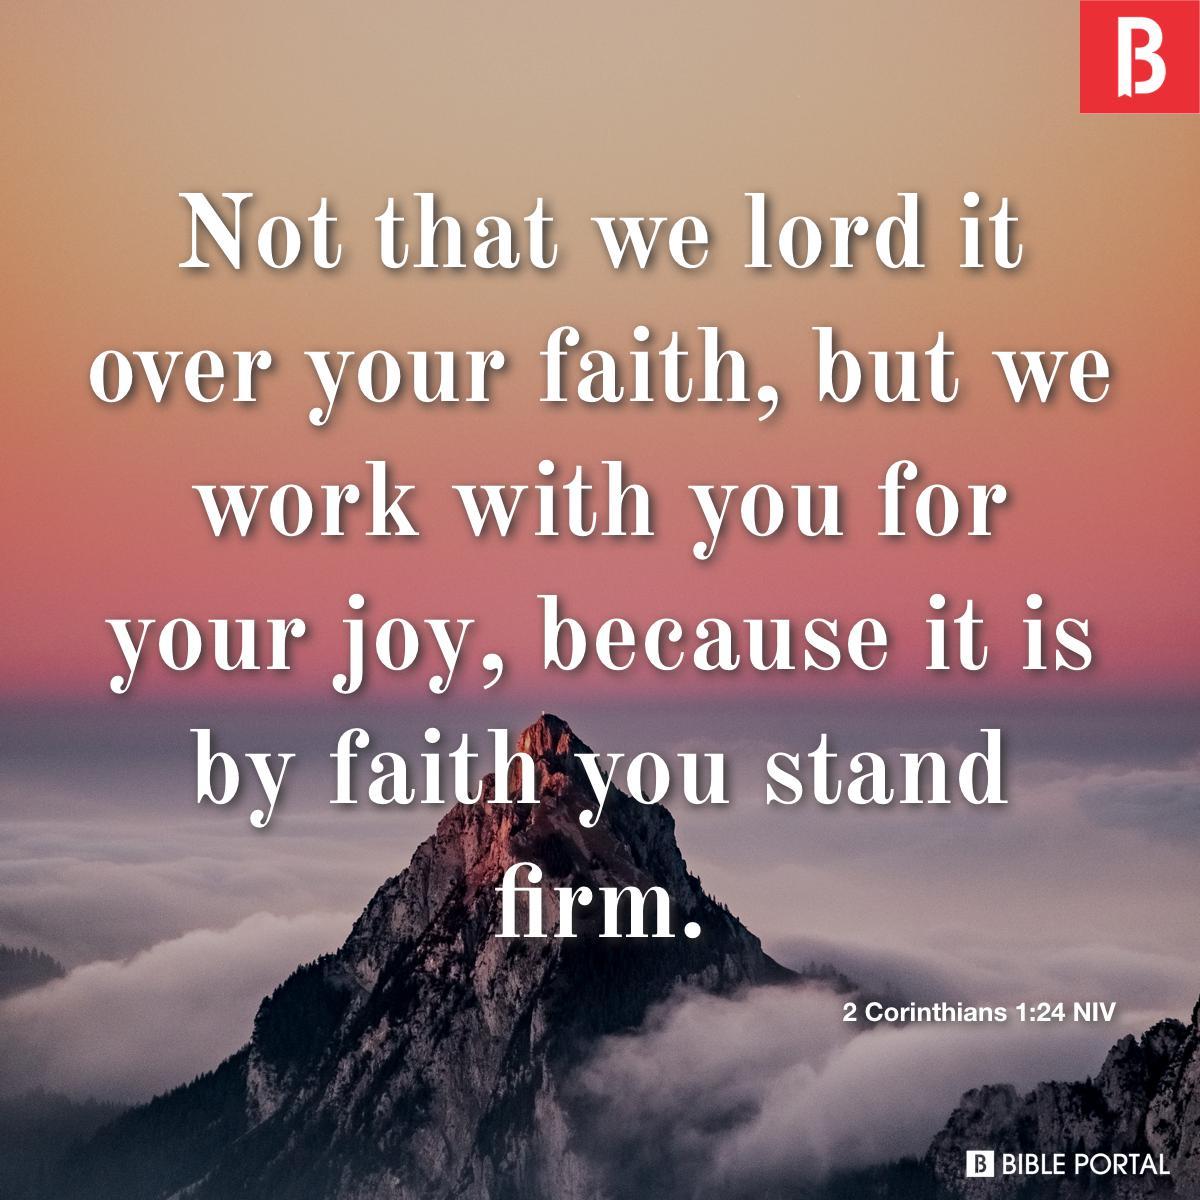 2 Corinthians 1:24 NIV